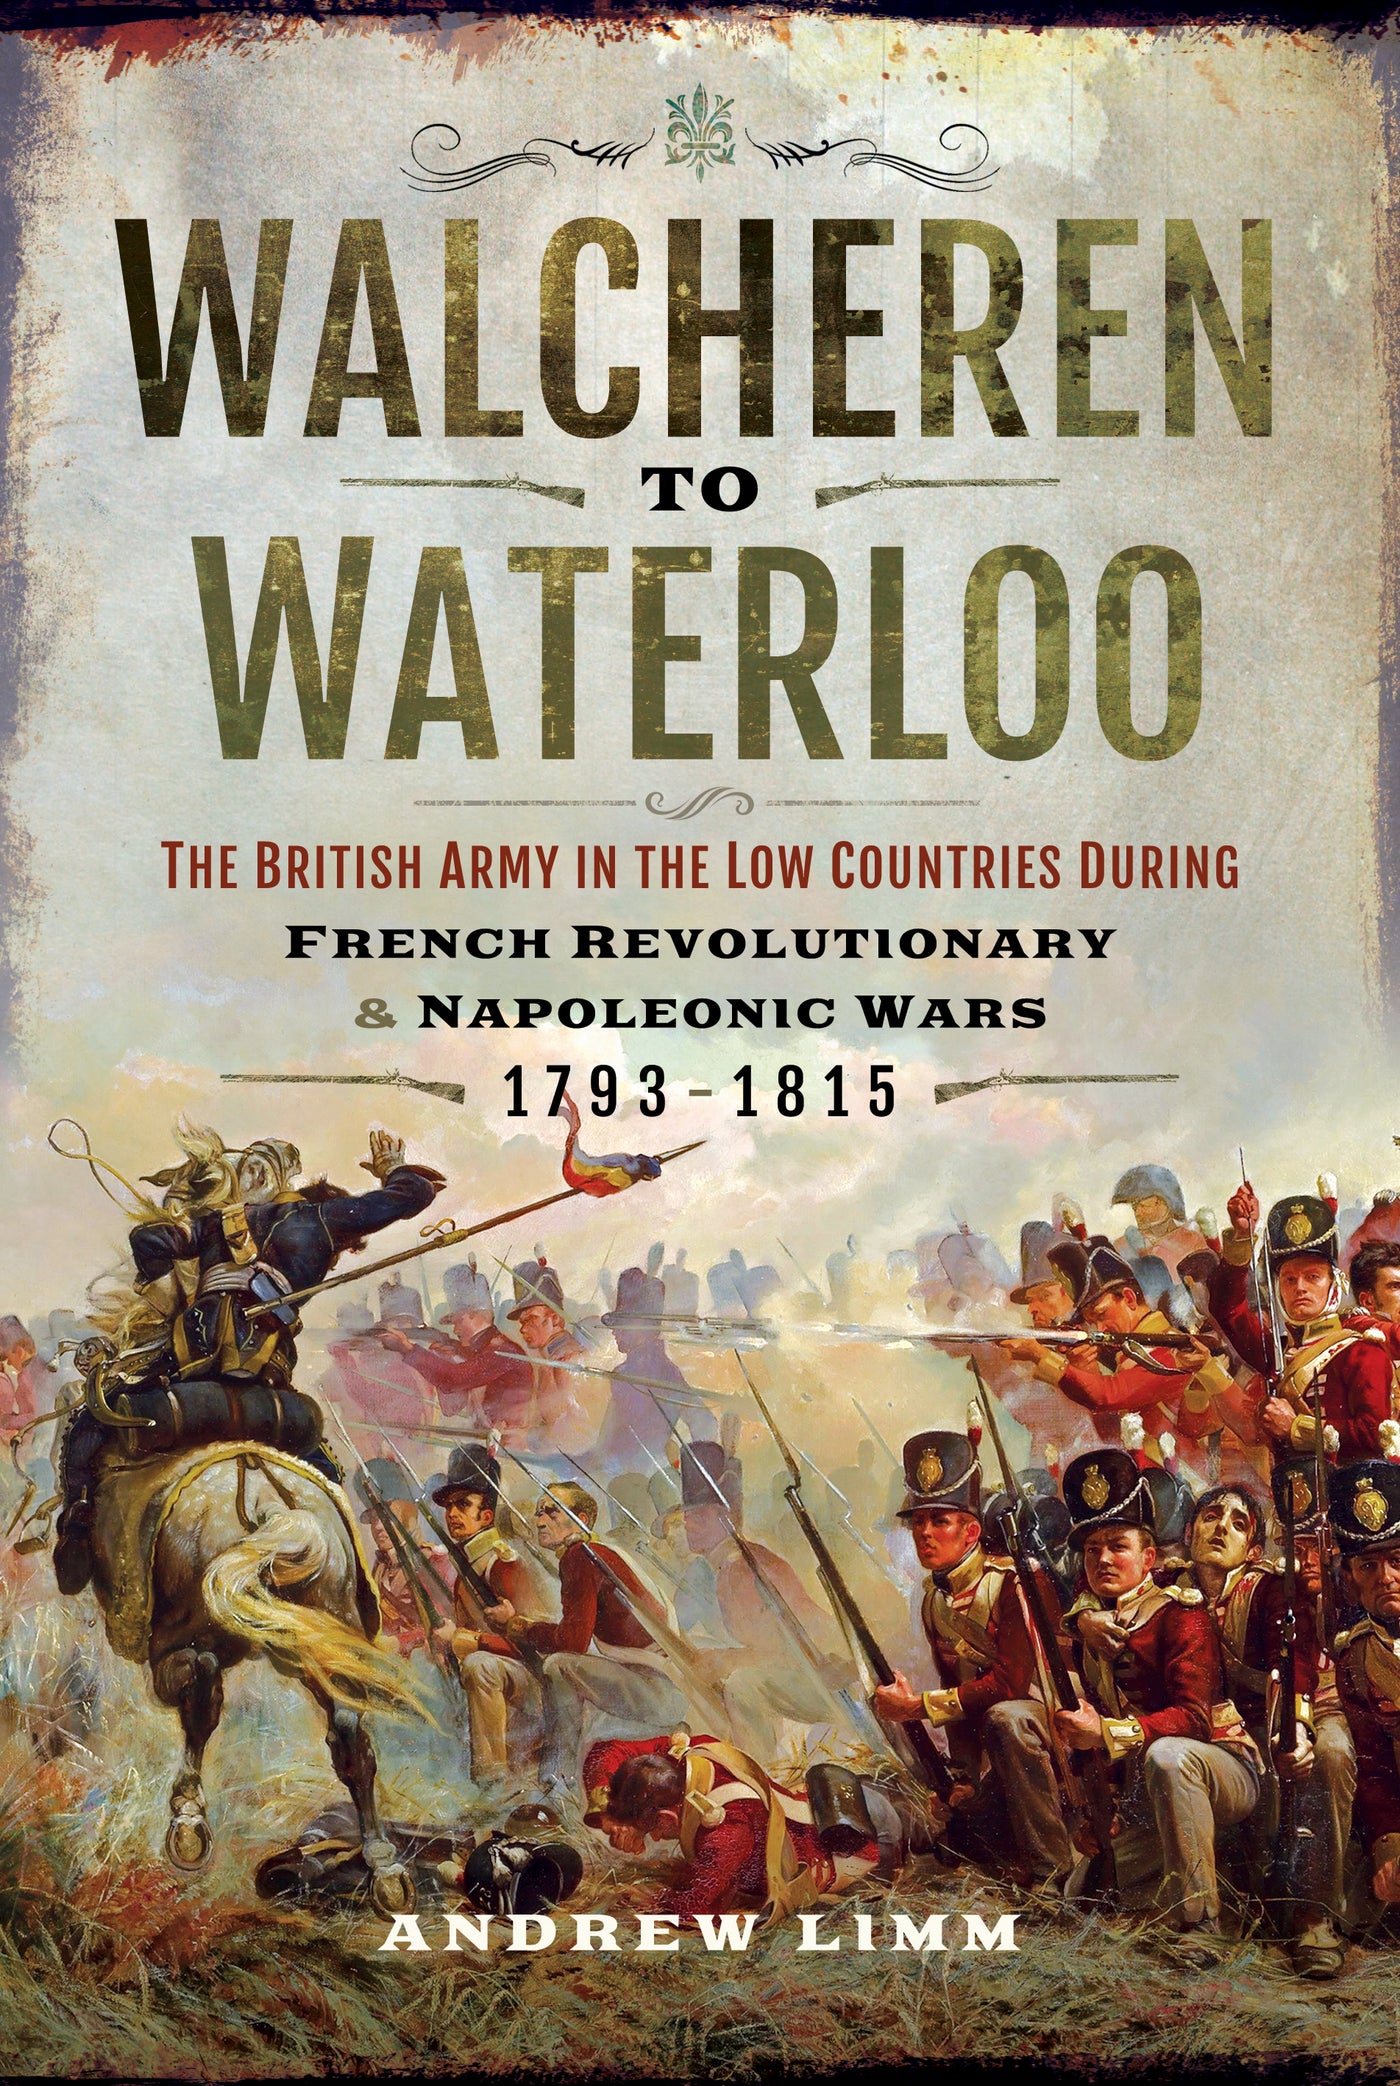 Walcheren to Waterloo